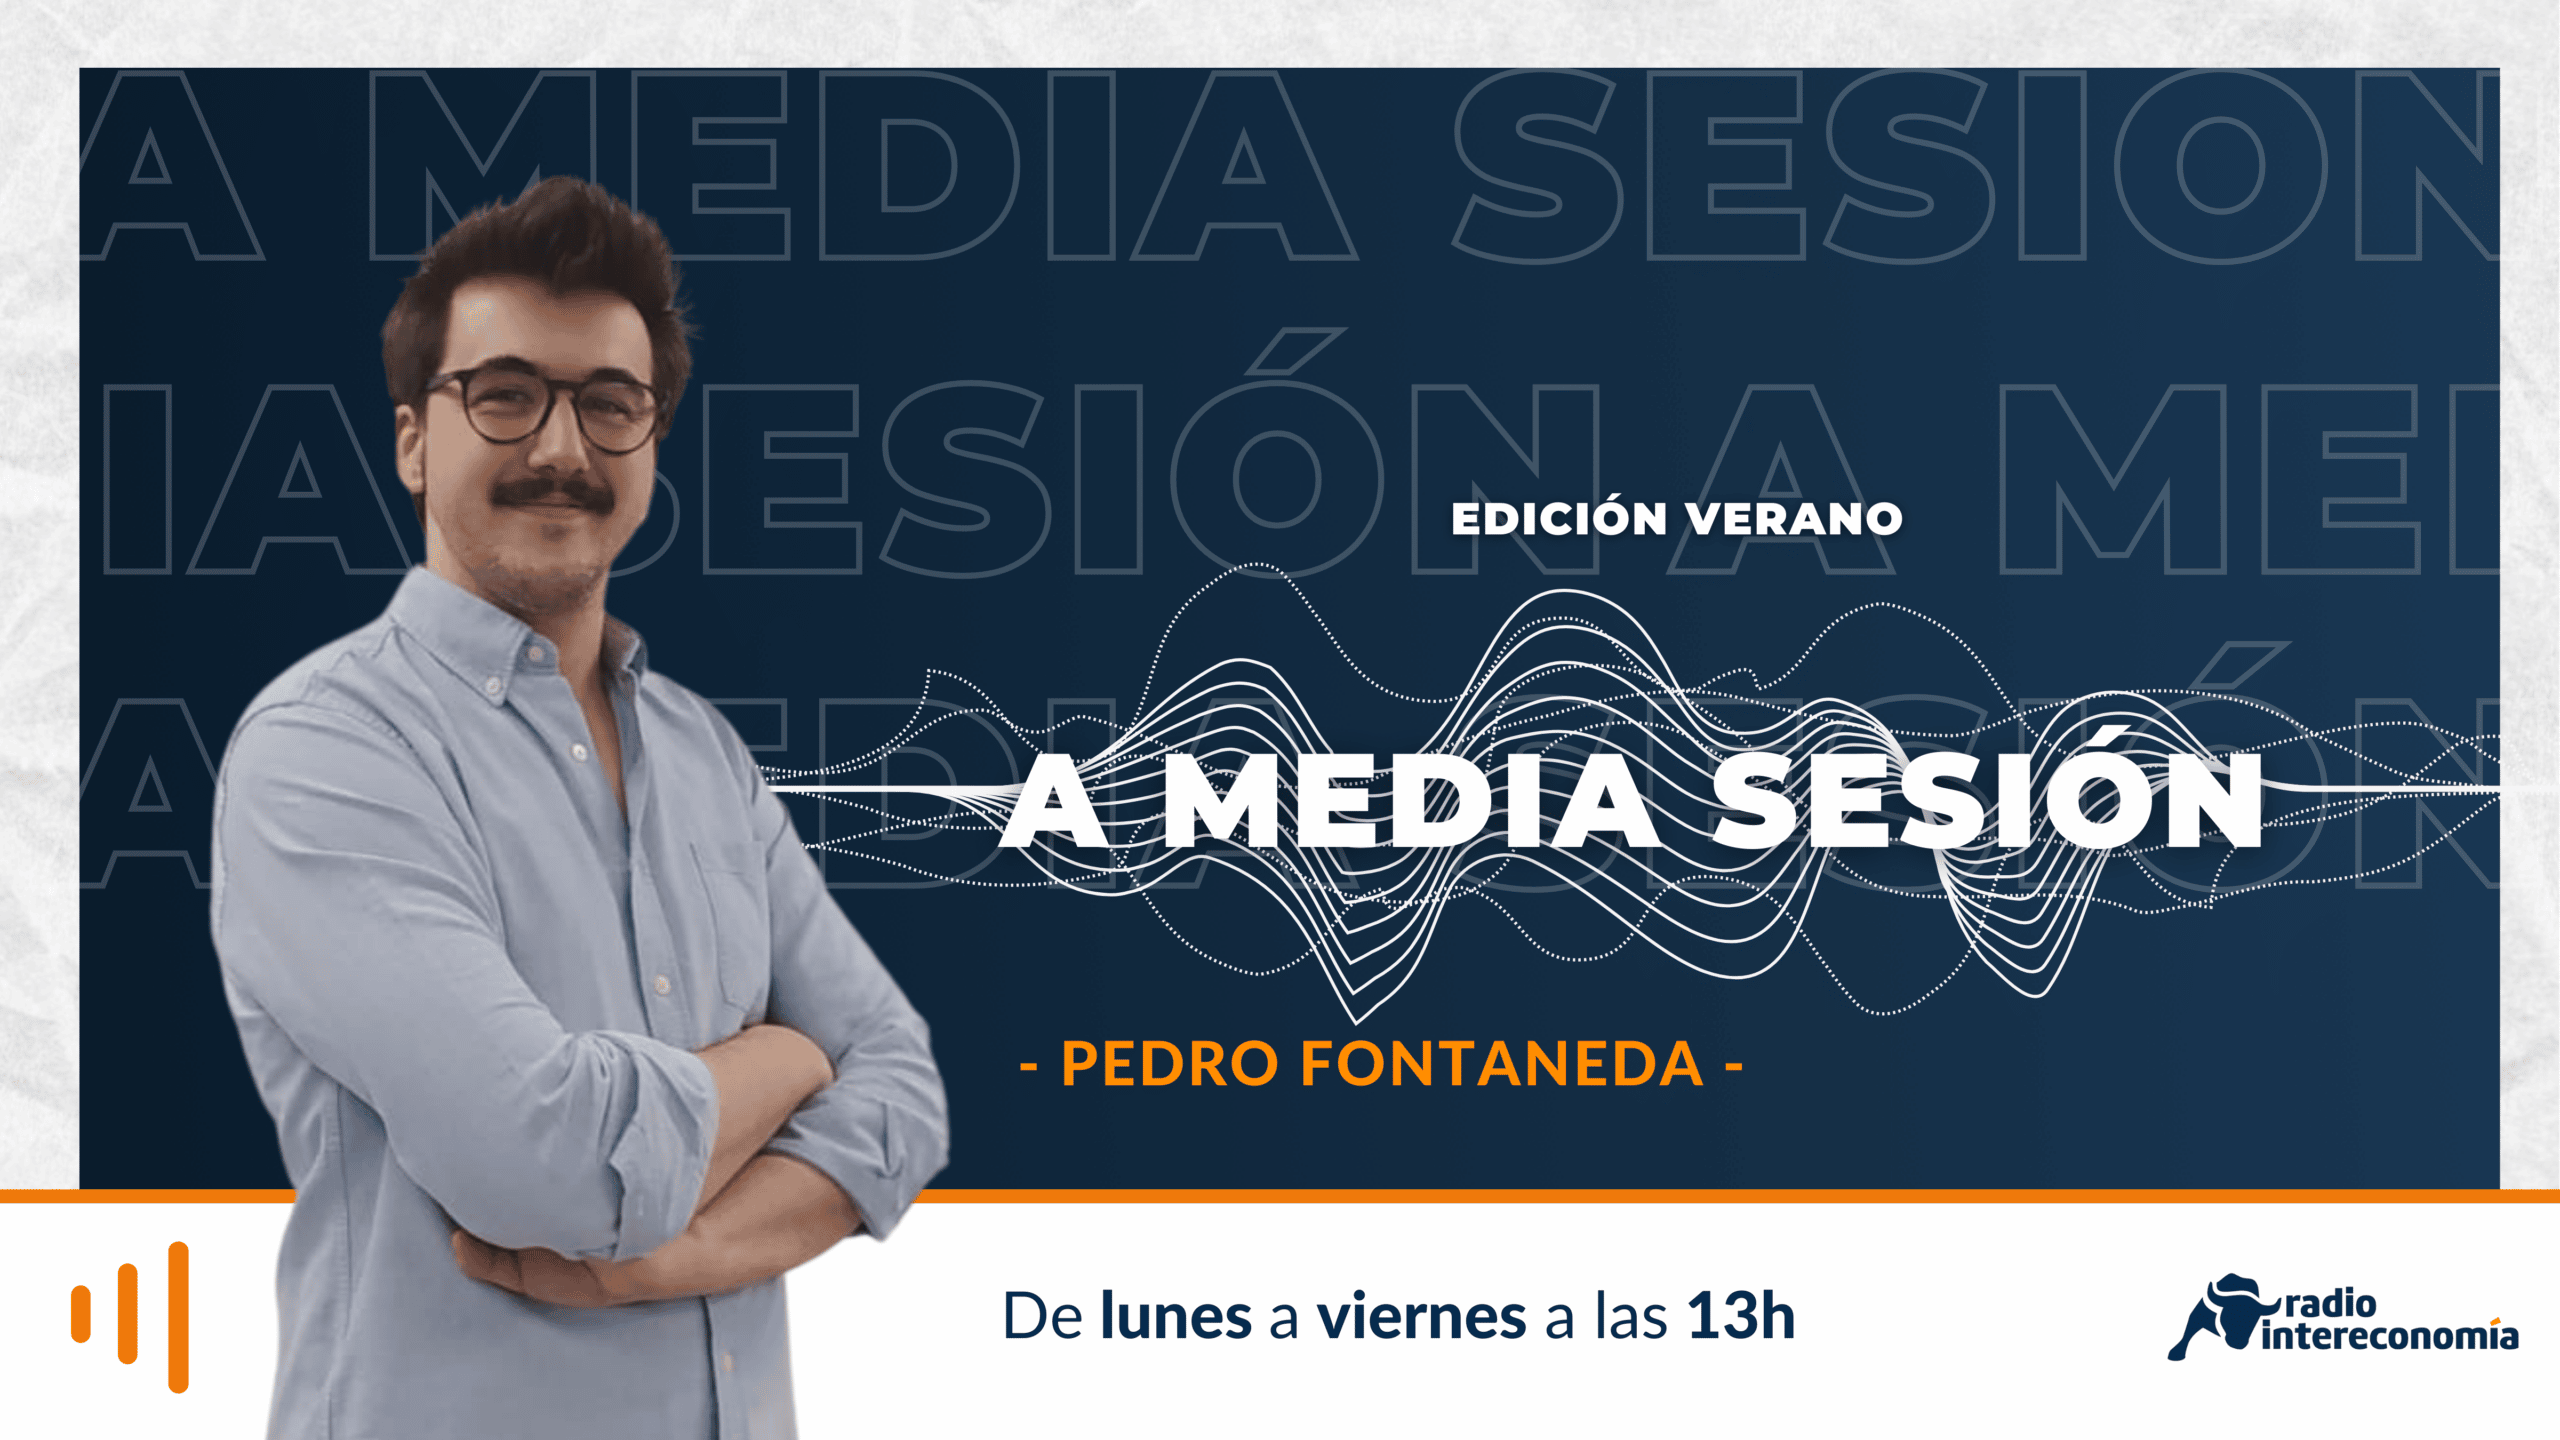 A Media Sesión -edición verano- 22/08. Análisis con Jorge del Canto. EDP